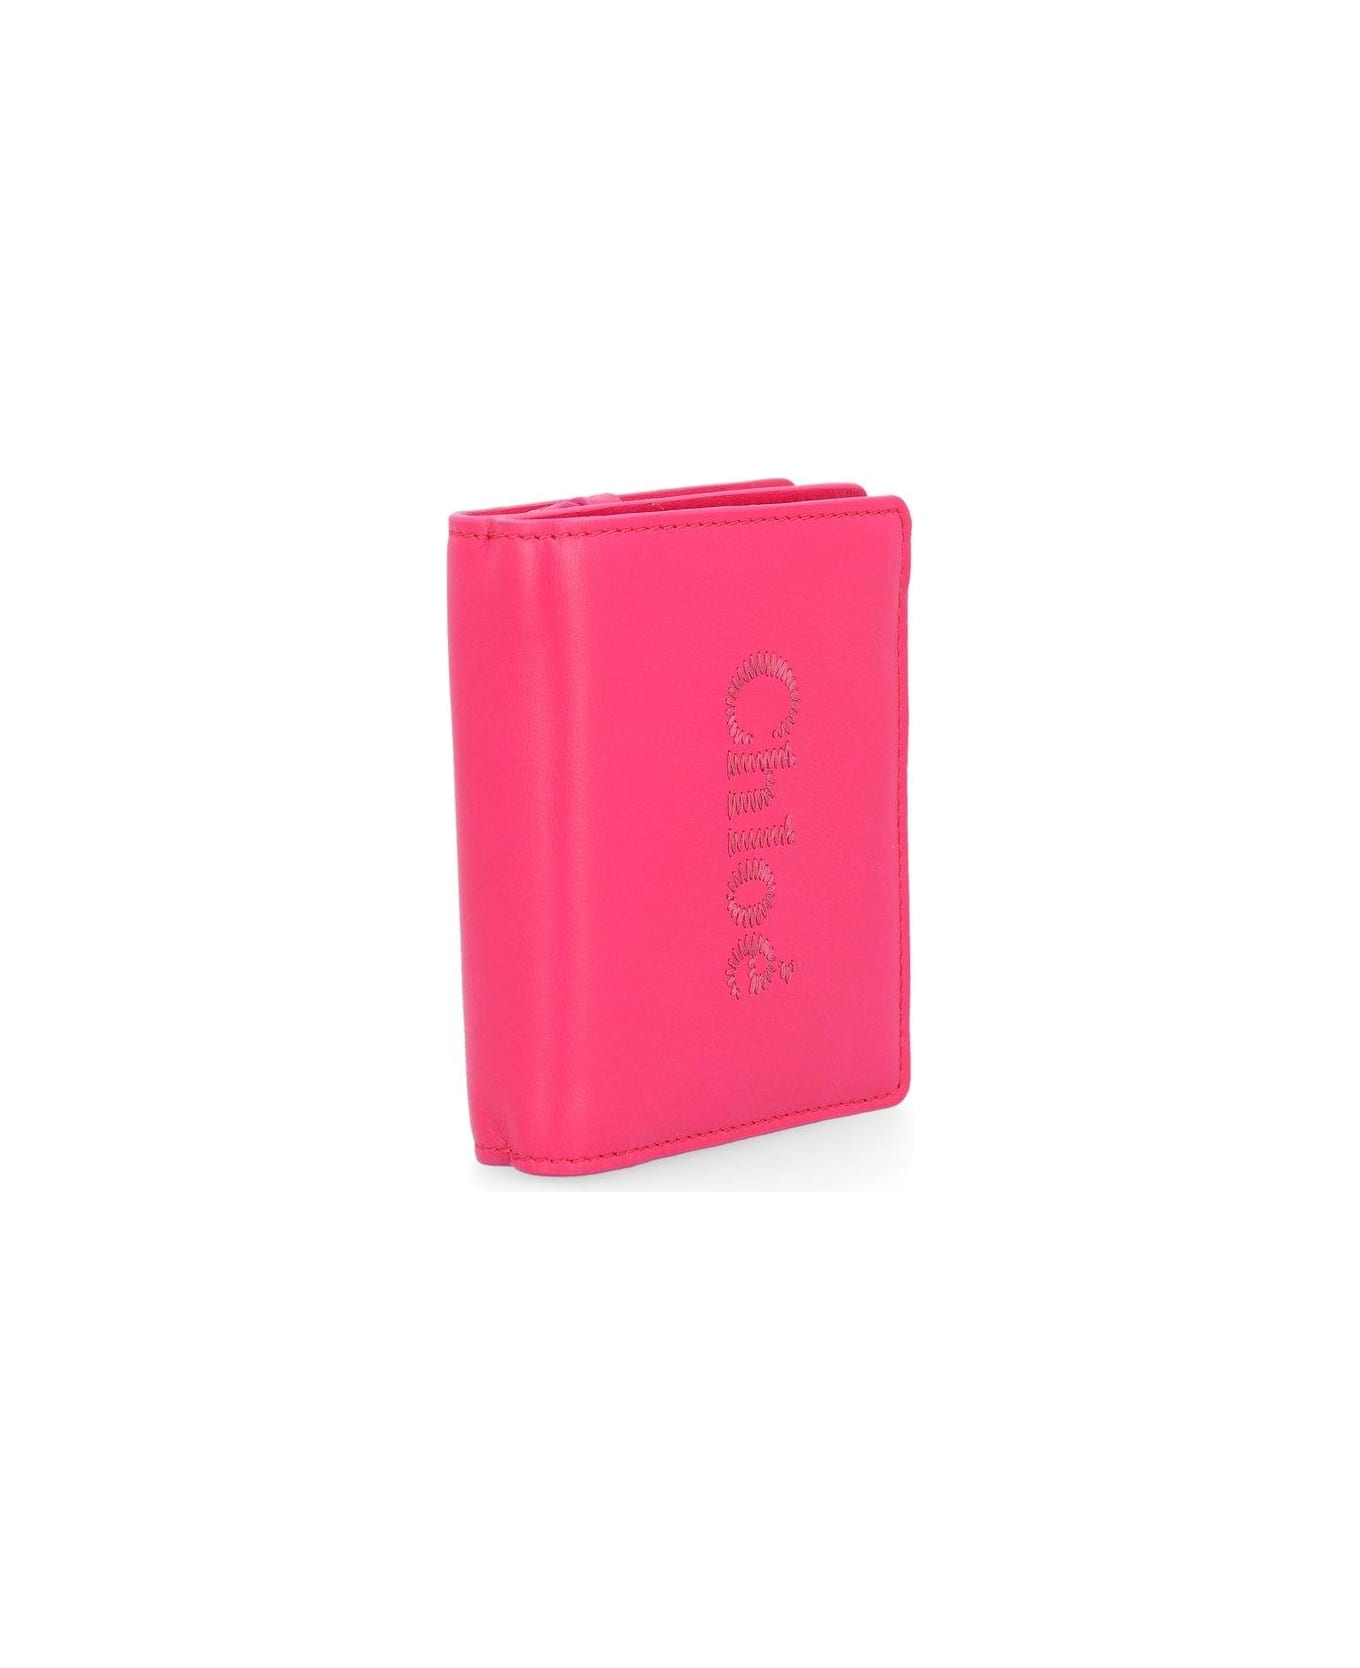 Chloé Sense Compact Bi-fold Wallet - Fizzy Pink